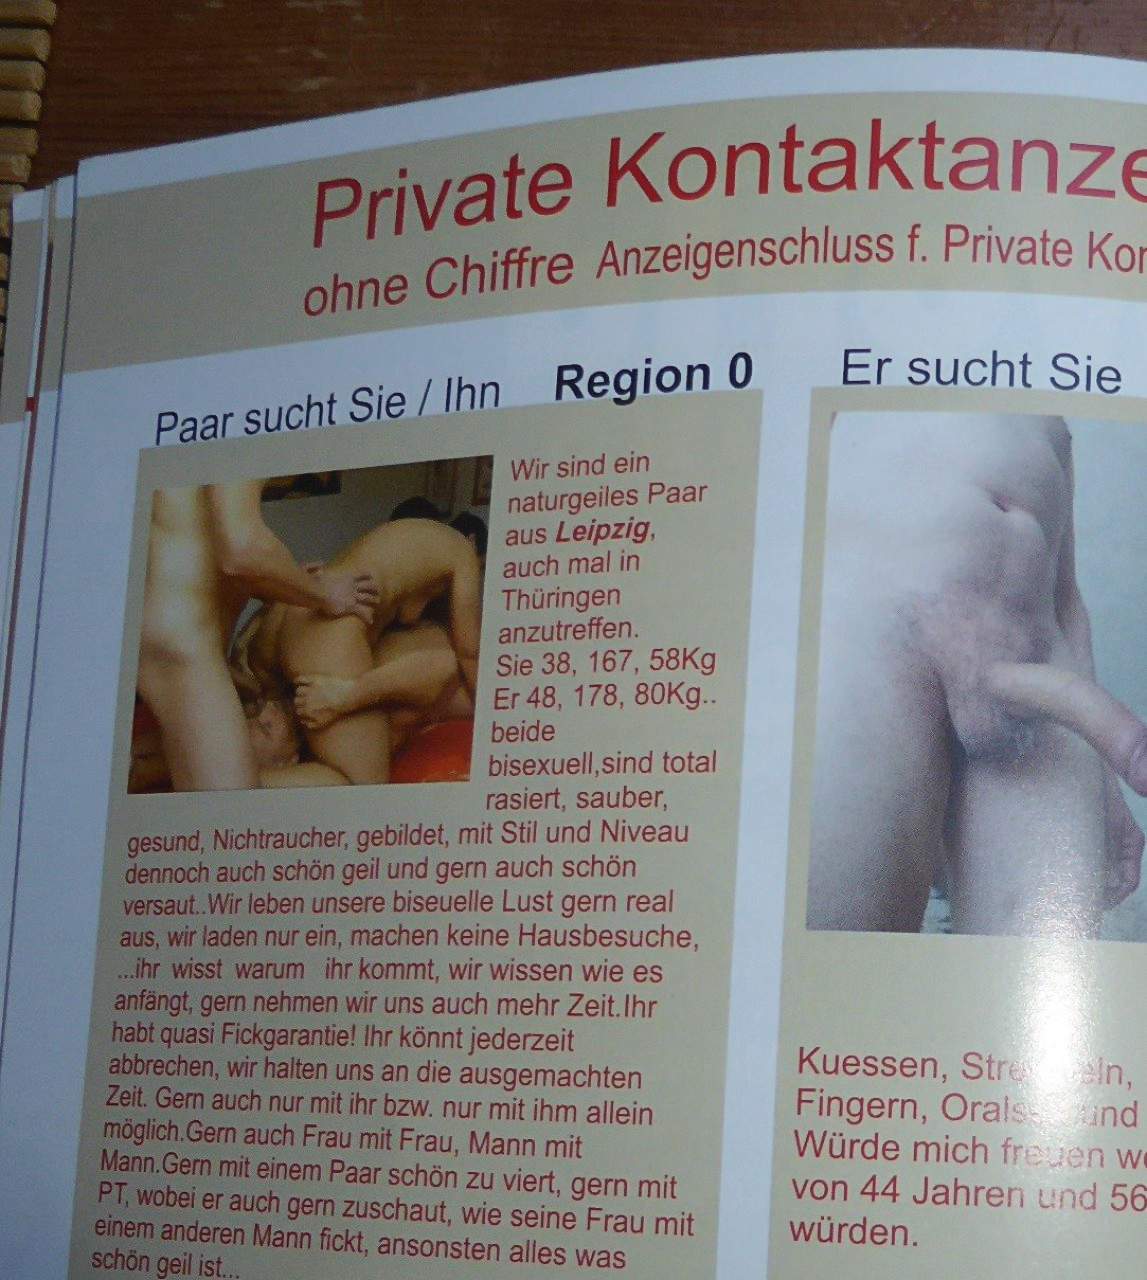 Erotikmagazine Pose trong